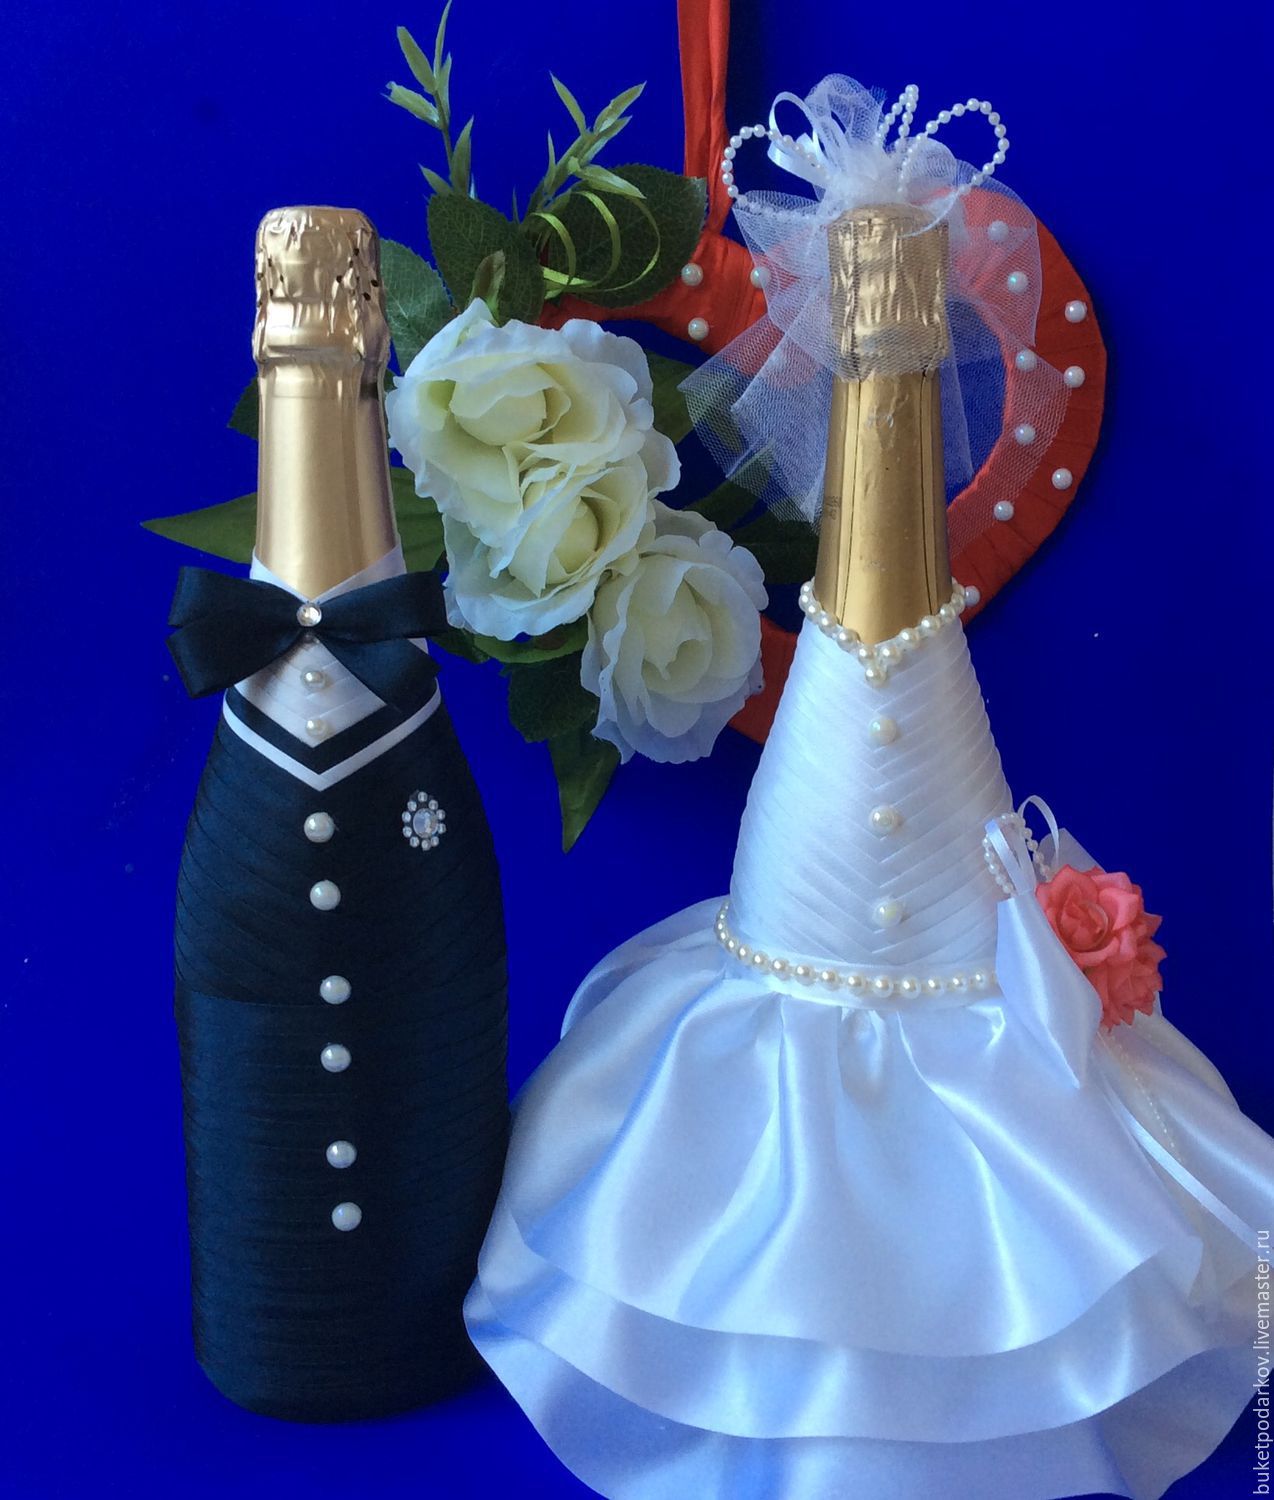 Оформление свадебных бутылок шампанского своими руками. как украсить шампанское на свадьбу